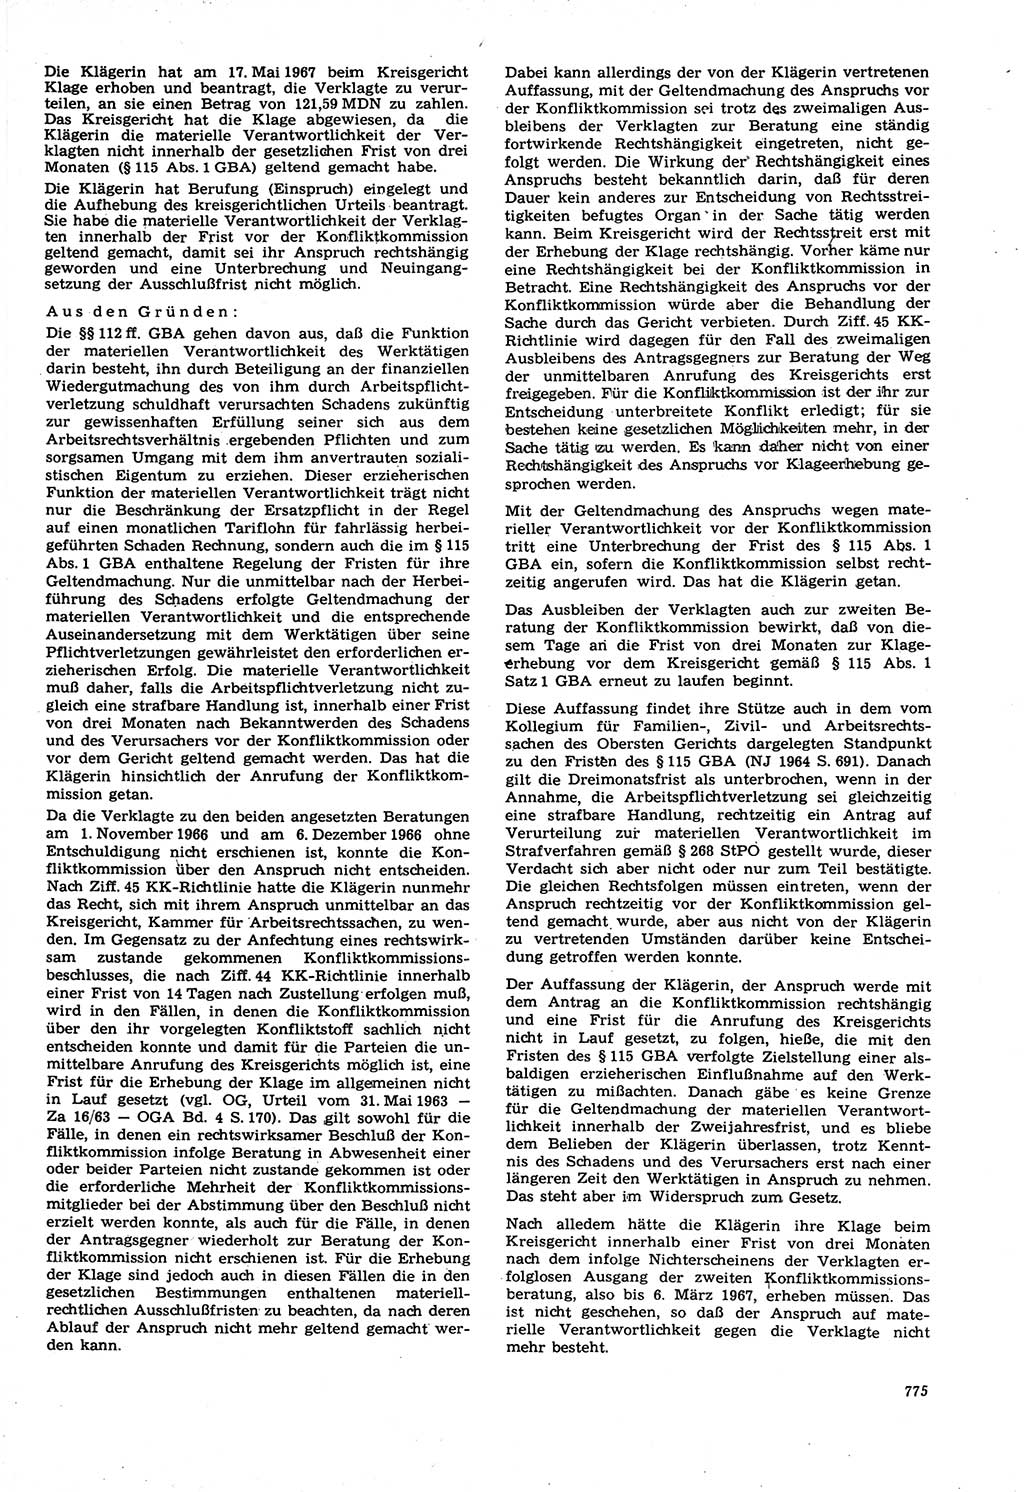 Neue Justiz (NJ), Zeitschrift für Recht und Rechtswissenschaft [Deutsche Demokratische Republik (DDR)], 21. Jahrgang 1967, Seite 775 (NJ DDR 1967, S. 775)